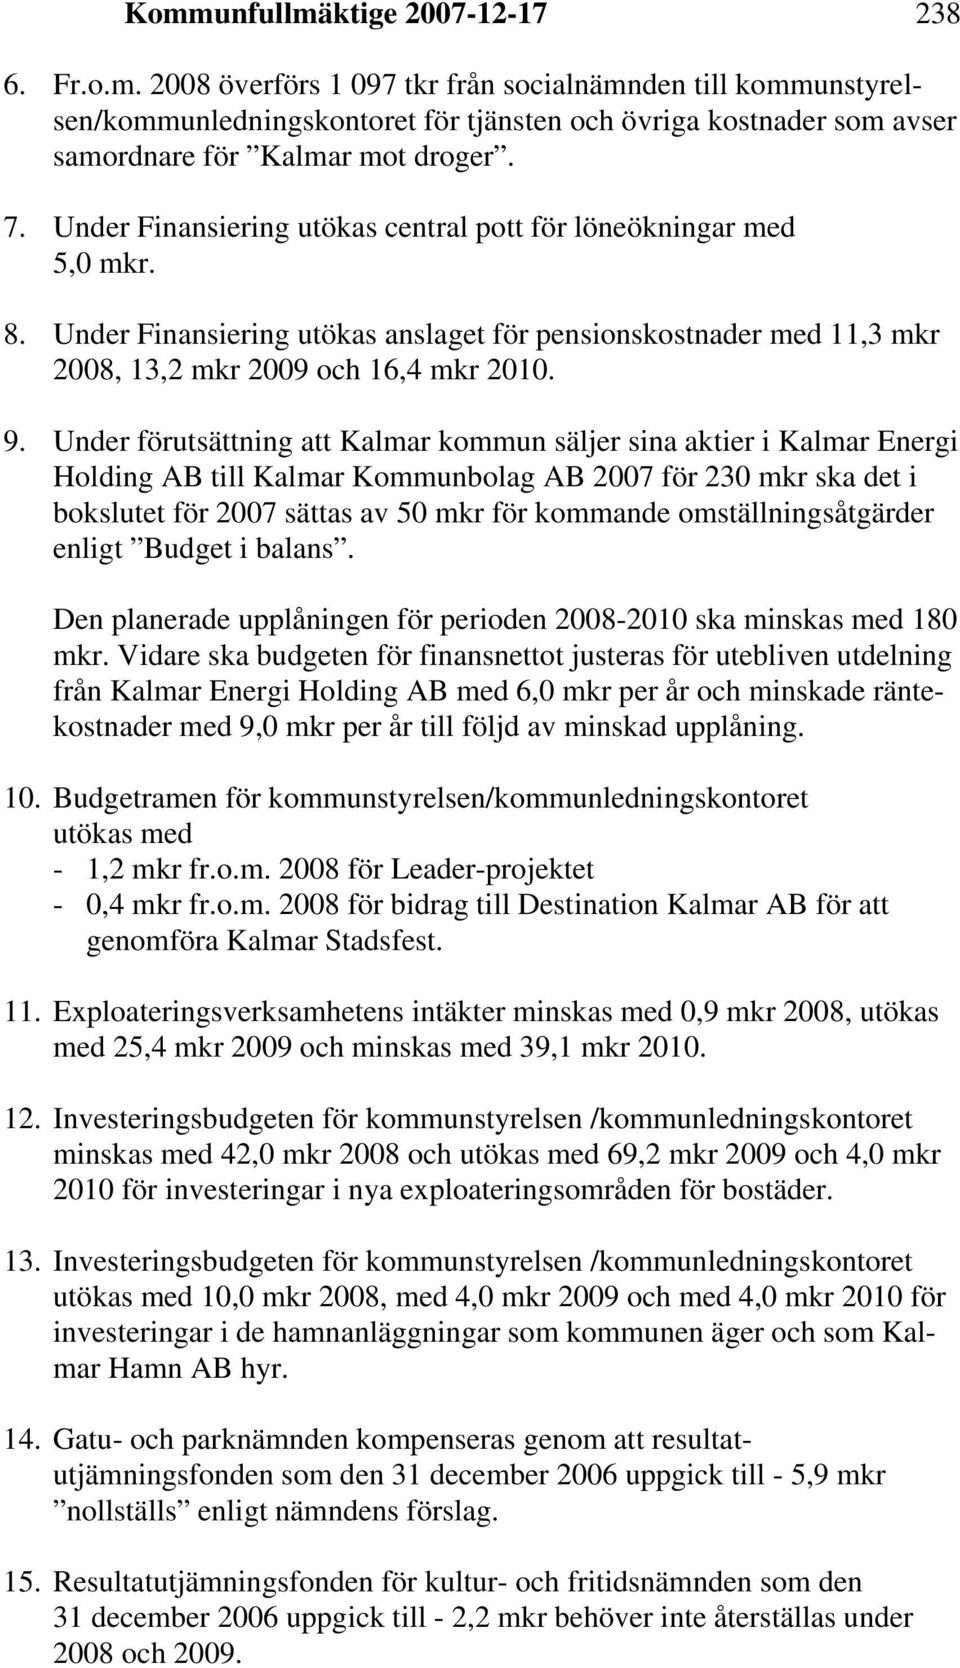 Under förutsättning att Kalmar kommun säljer sina aktier i Kalmar Energi Holding AB till Kalmar Kommunbolag AB 2007 för 230 mkr ska det i bokslutet för 2007 sättas av 50 mkr för kommande